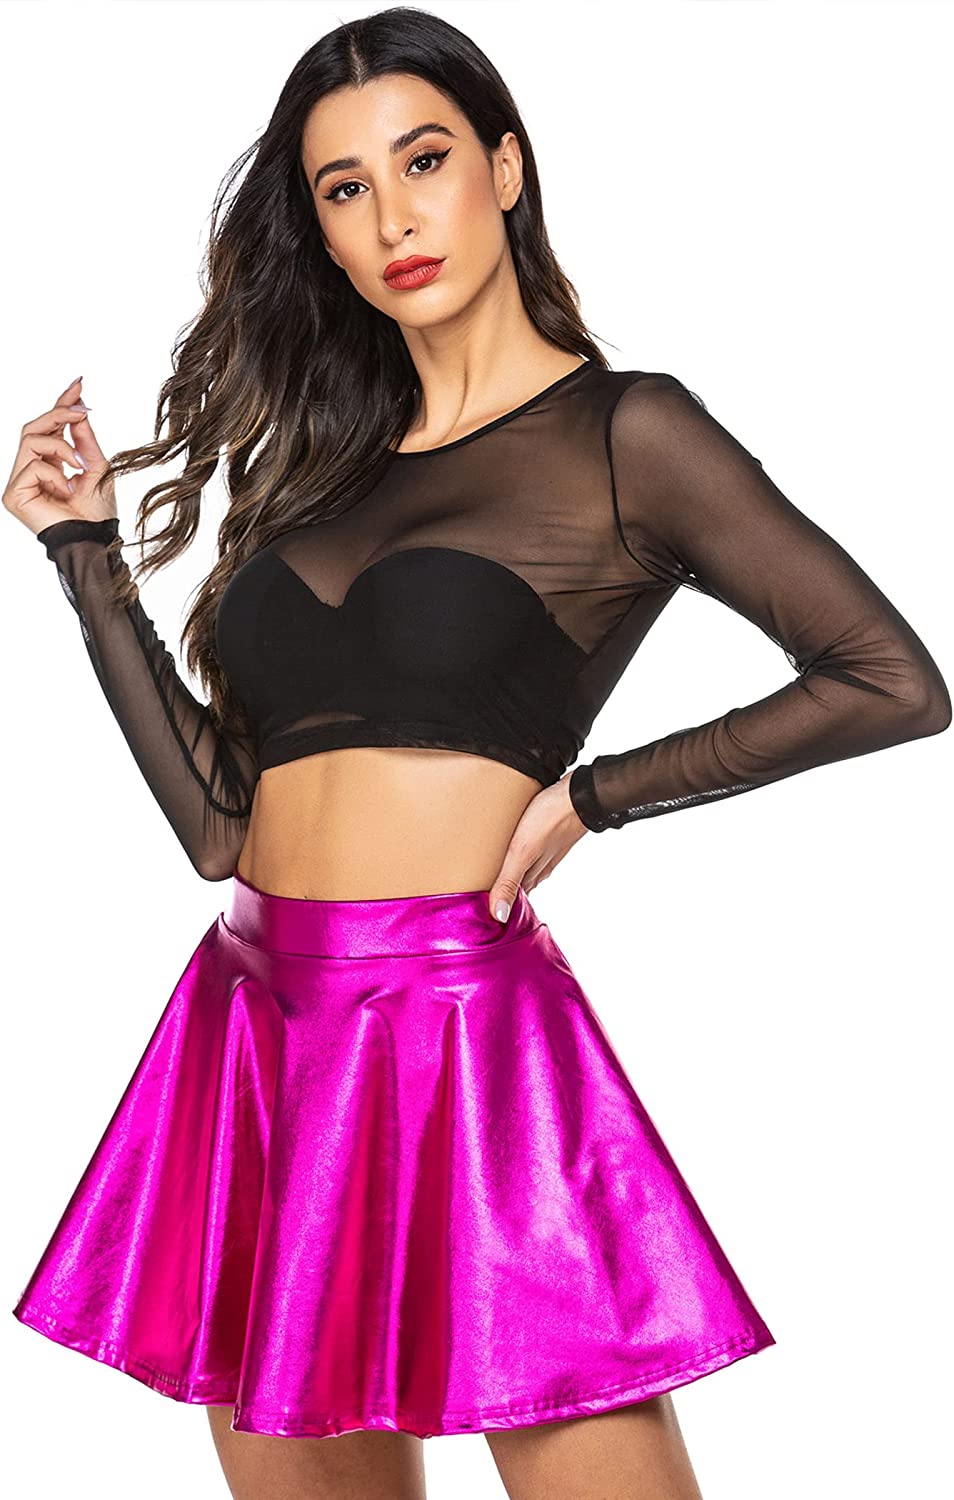 Avidlove Metallic Skirt for High Waisted Skirt Shiny Stretchy Mini A-Line Flared Skater Skirt S-XXL